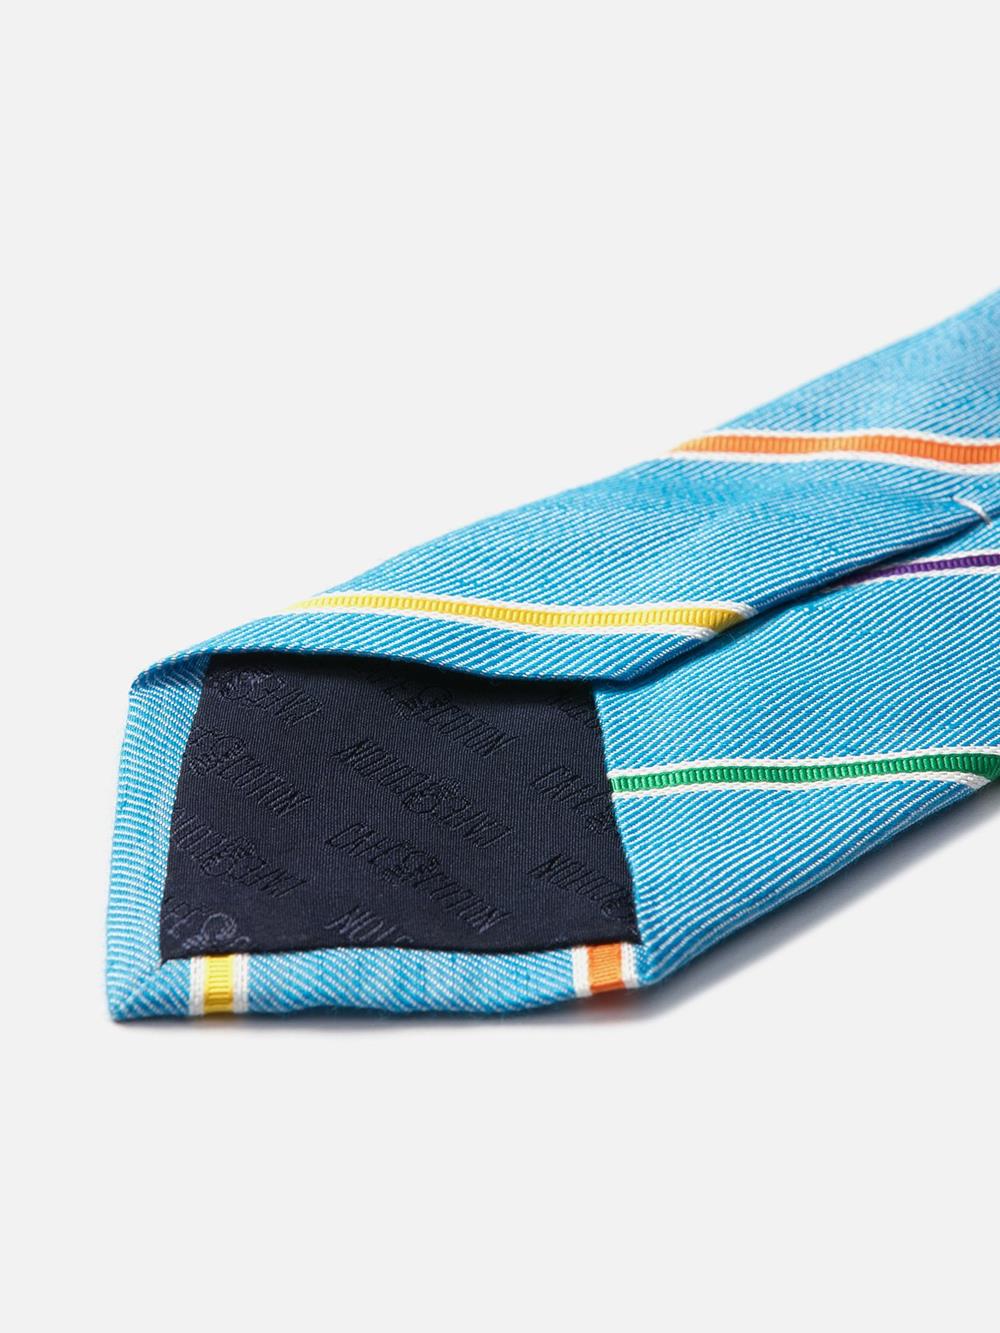 Cravate en soie et lin turquoise à rayures multicolores